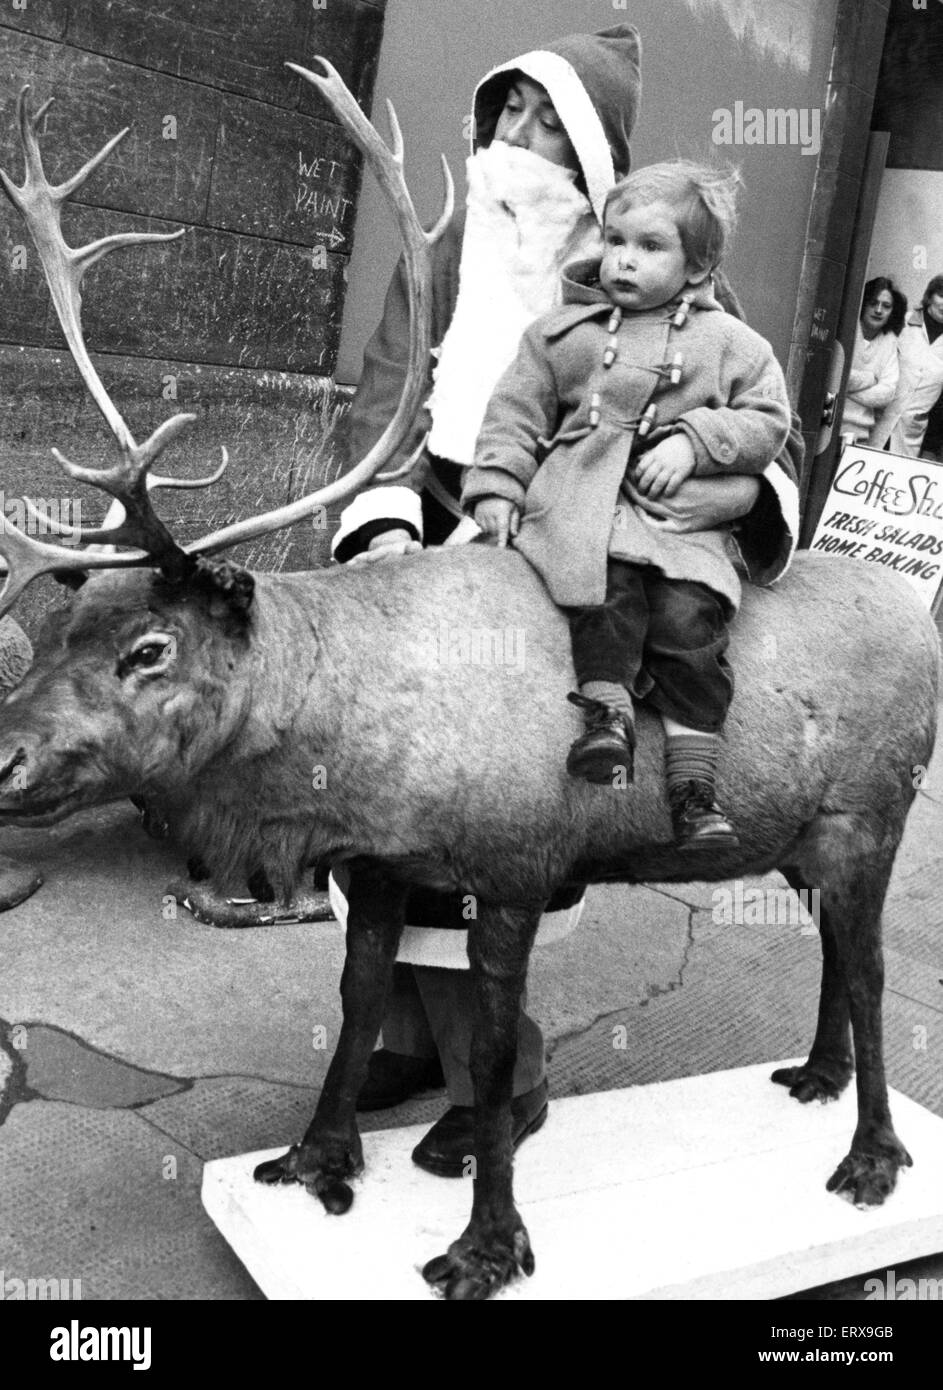 Billy Cadell trafen sich Santa und Rudolph das Rentier in Market Street, Edinburgh. Santa und Rudolph waren auf dem Weg nach Edinburgh Fruit Market Gallery das Rentier in einem Scottish Arts Council Ausstellung über Weihnachtsbräuche unten aufgenommen wird die Stockfoto